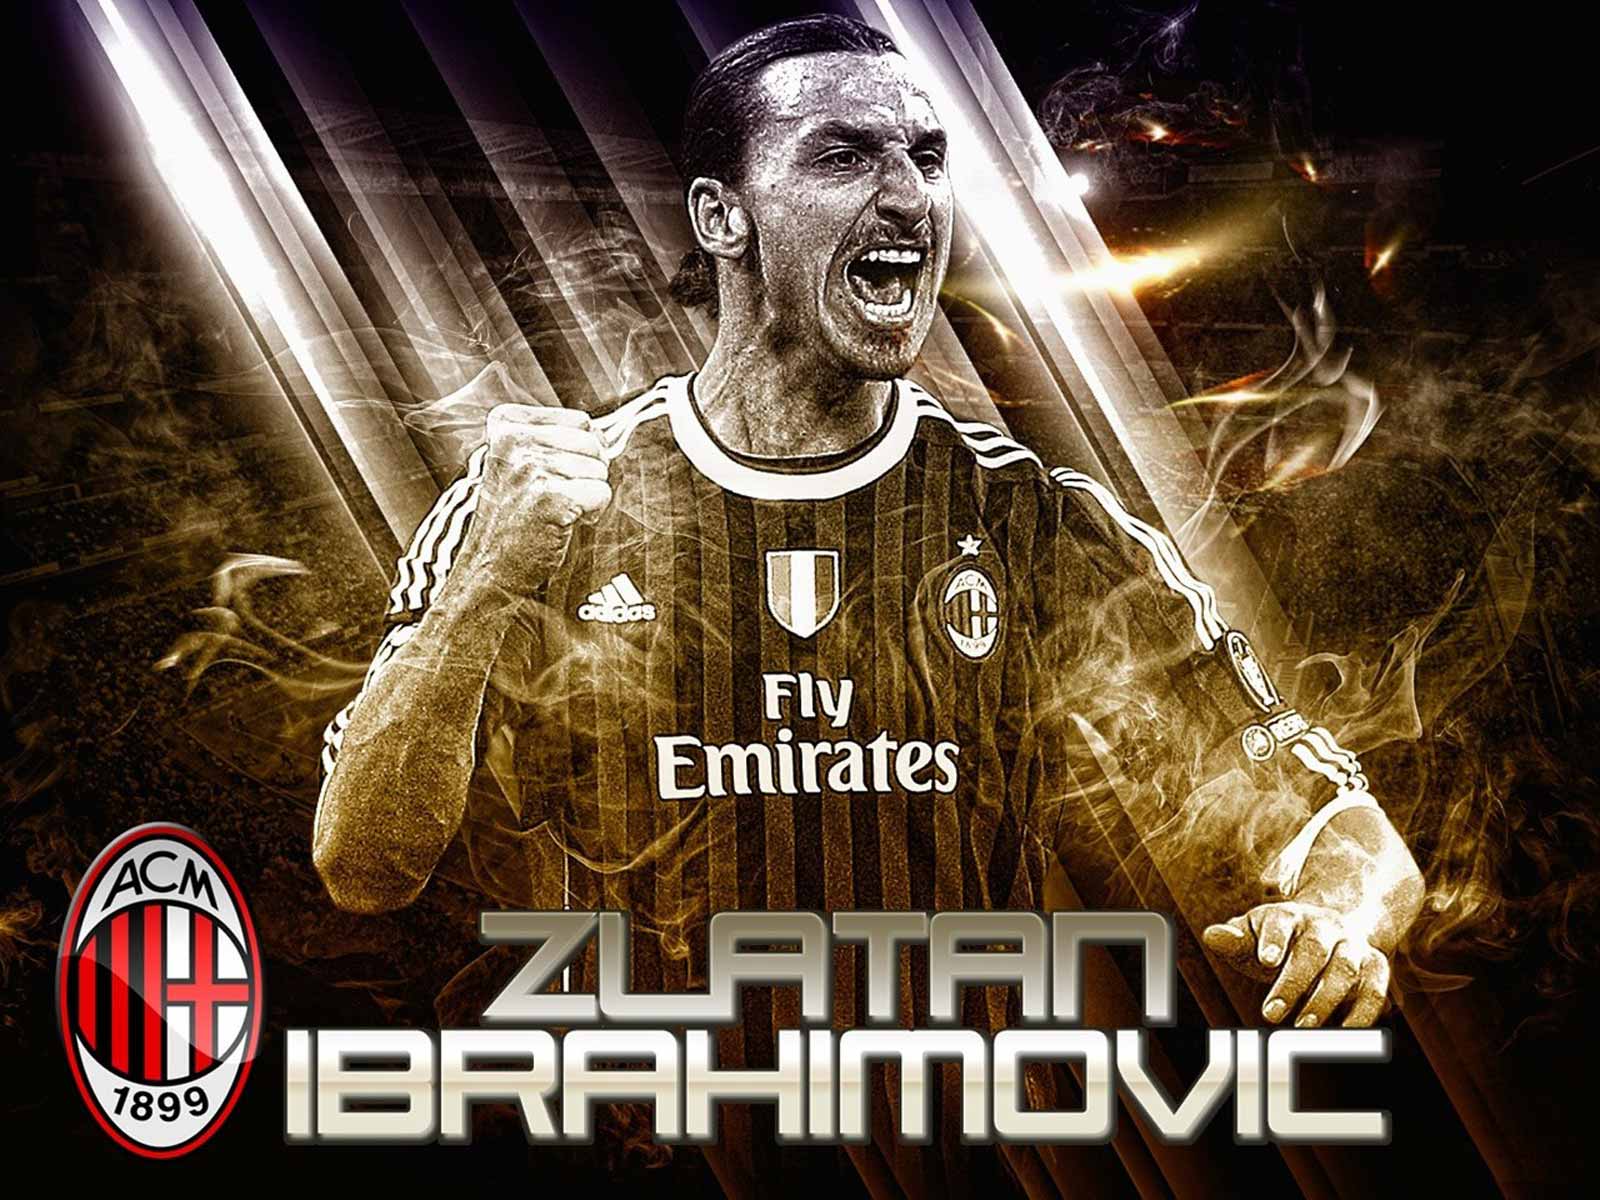 Free download Zlatan Ibrahimovic AC Milan HD Wallpaper